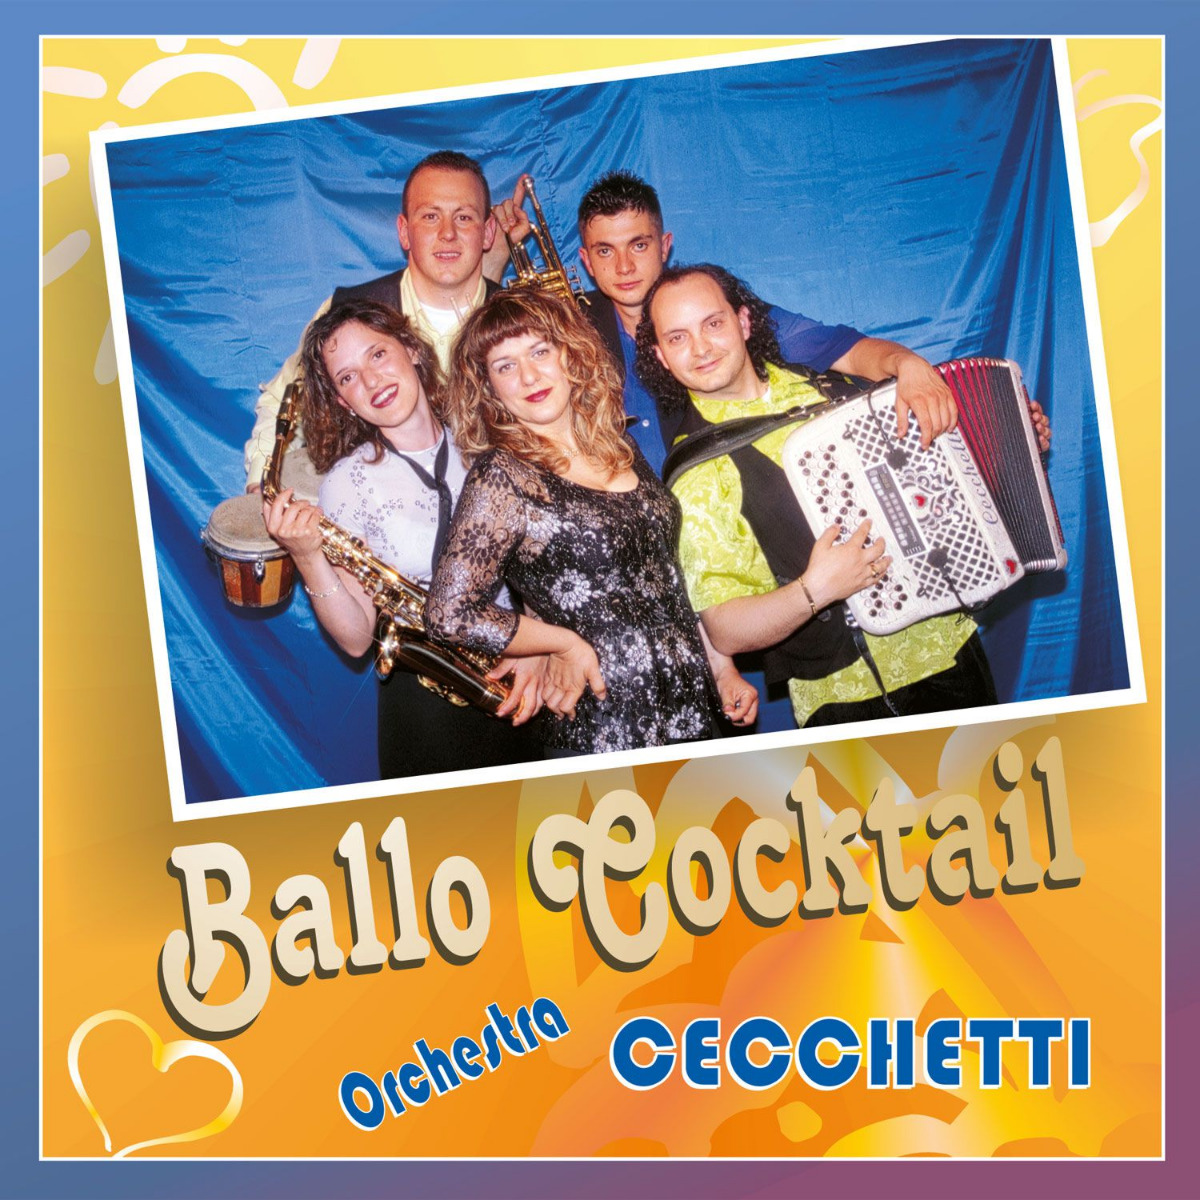 Orchestra Cecchetti - ballo cocktail